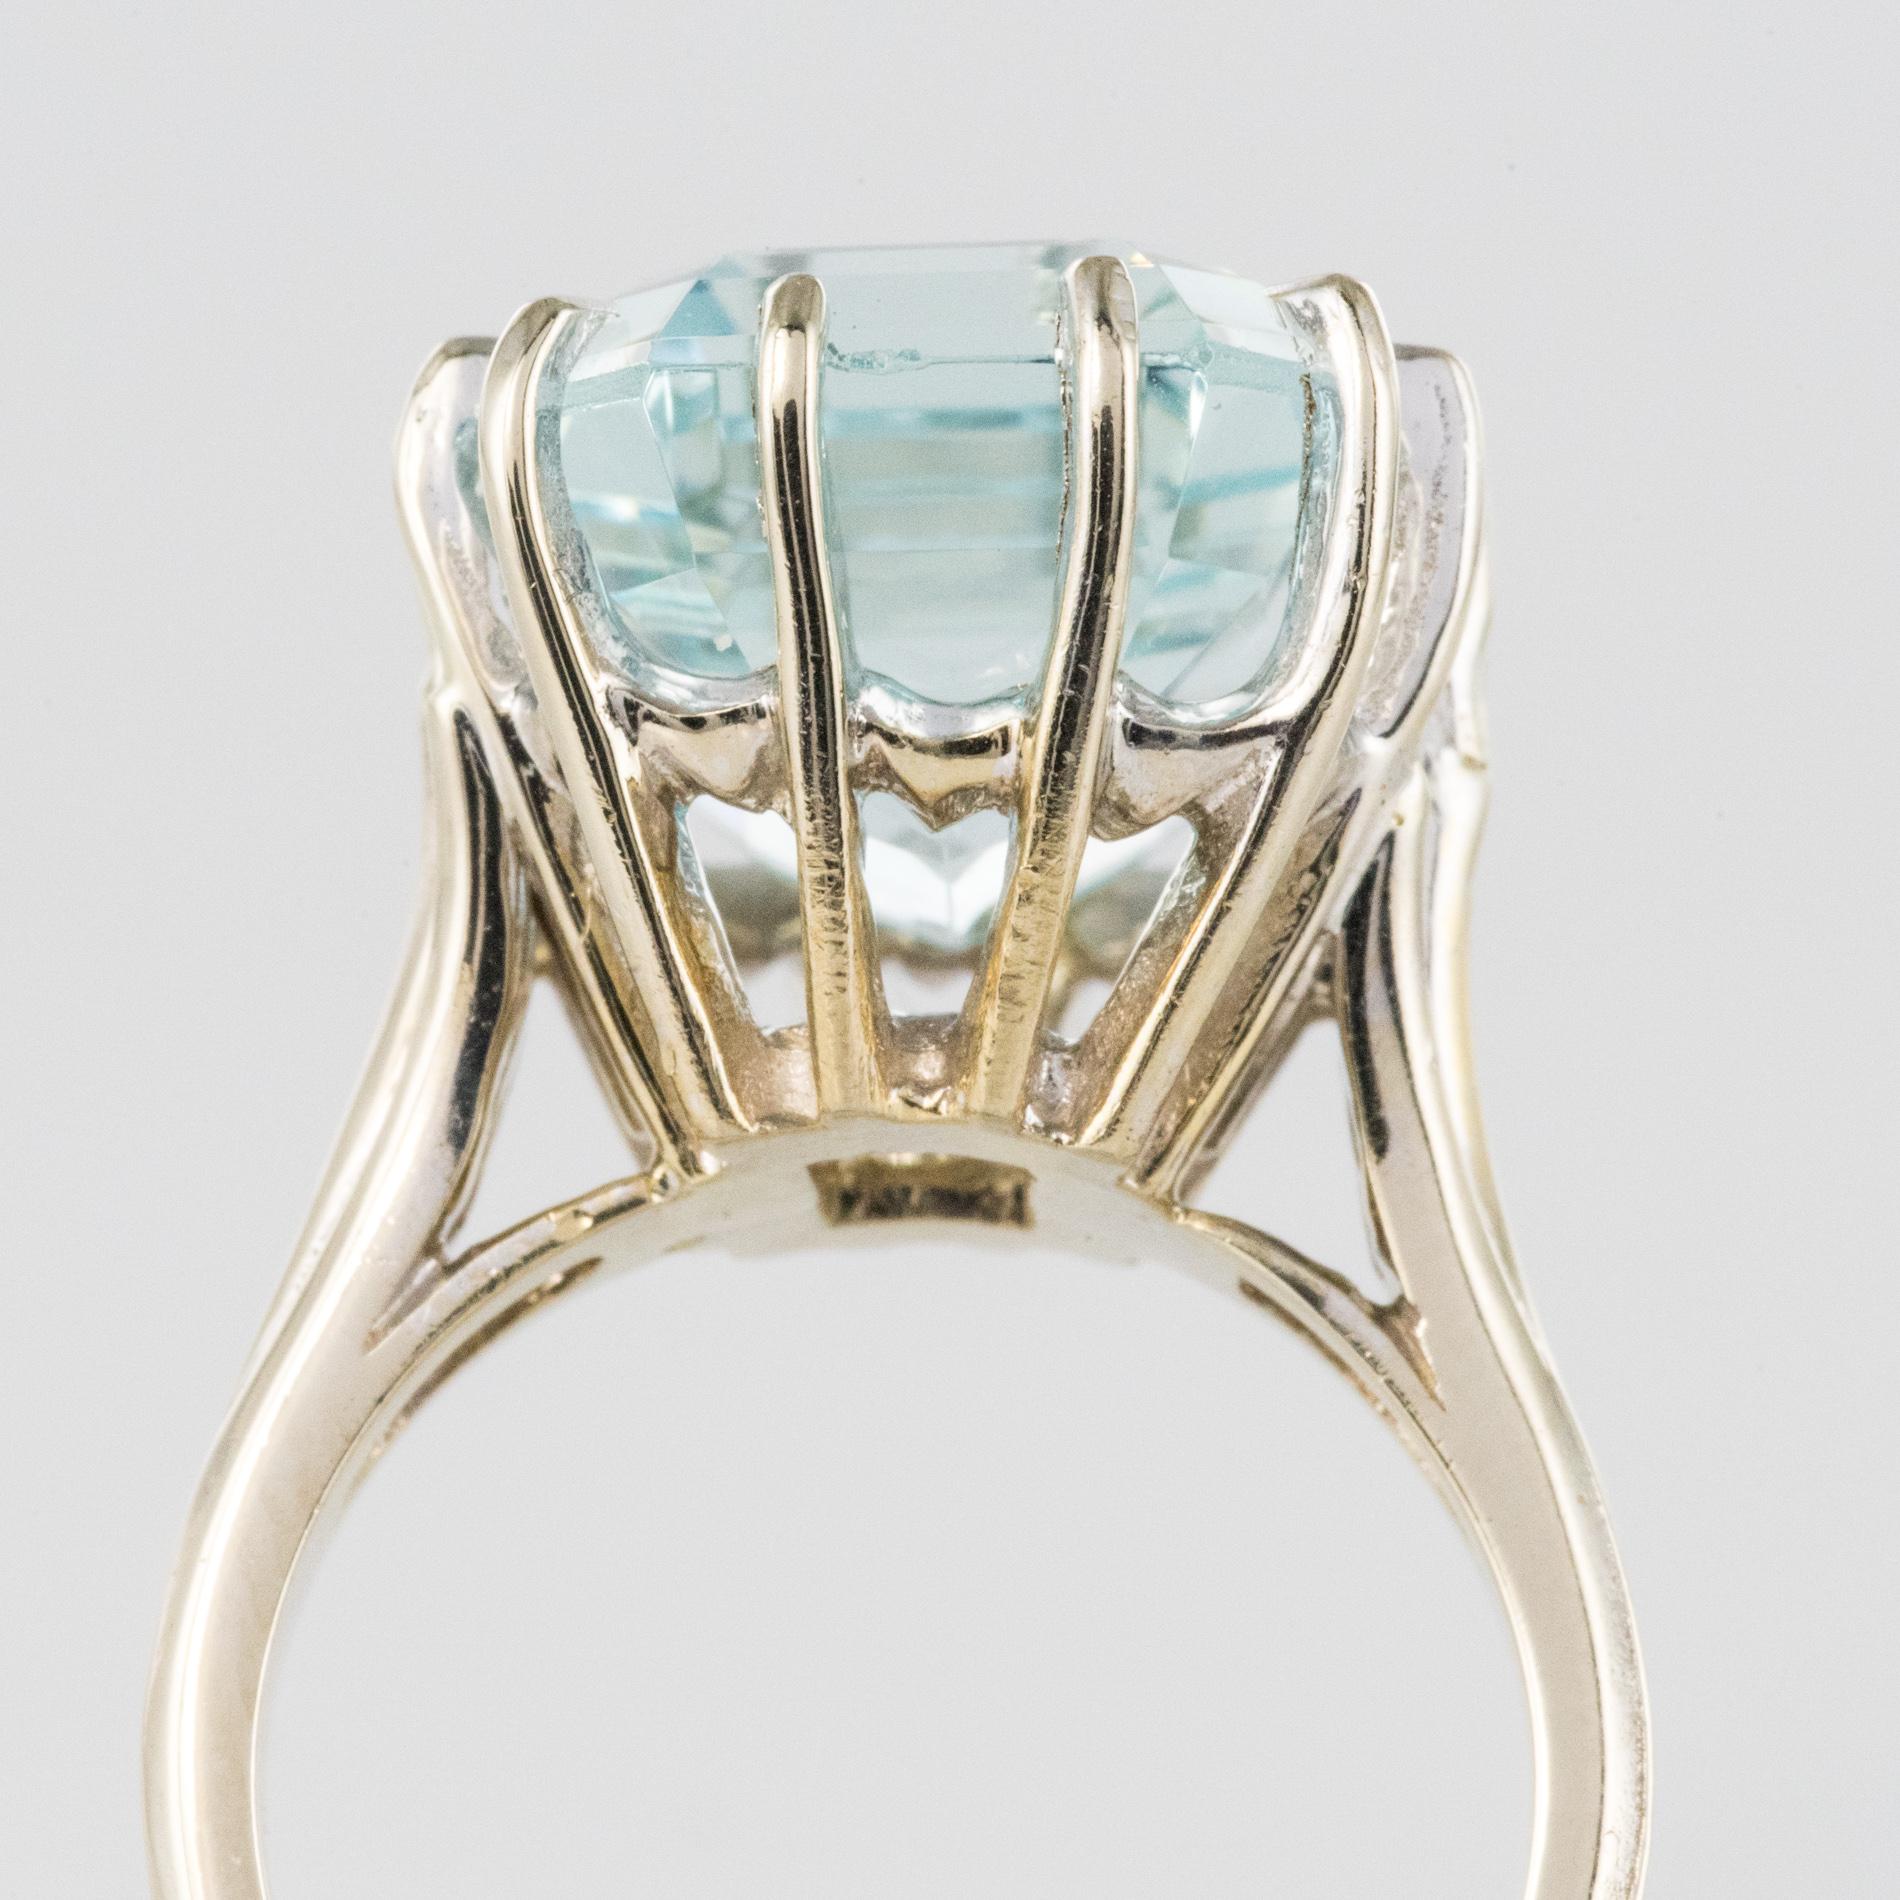 Women's French 1960s 9 Carat Aquamarine Claws Set 18 Karat White Gold Ring